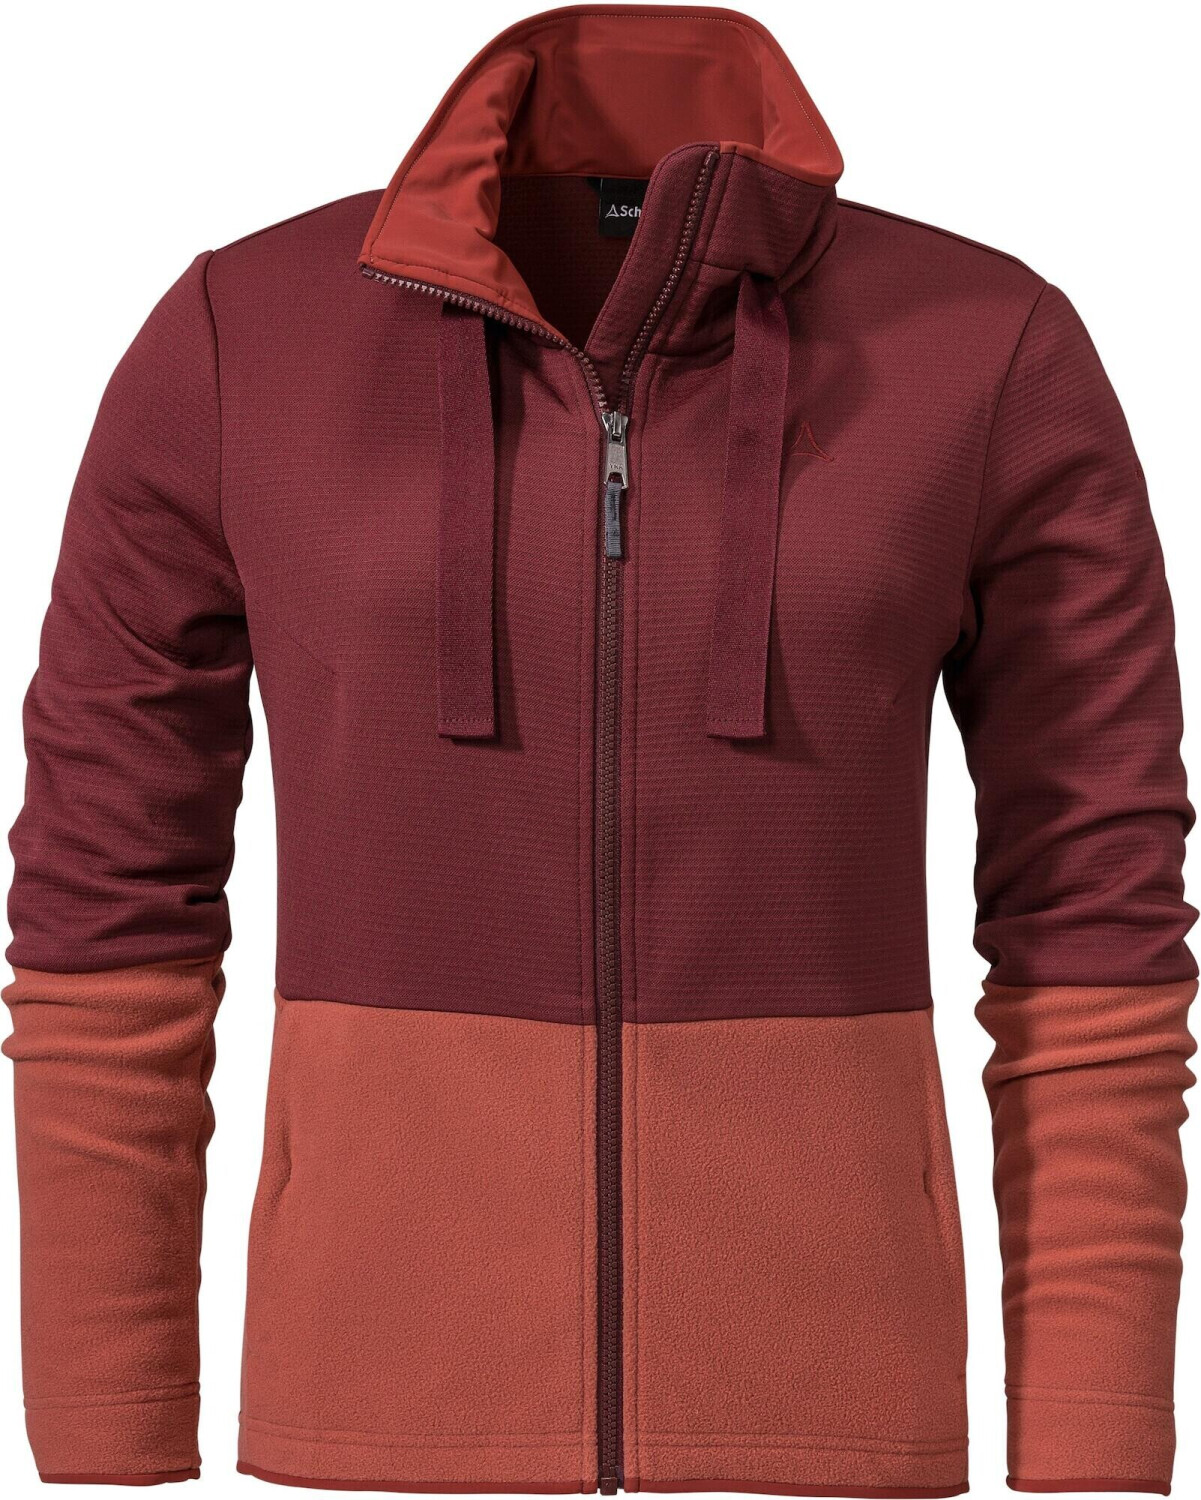 Schöffel Fleece Jacket burgundy | Pelham 69,59 bei dark L € Preisvergleich ab